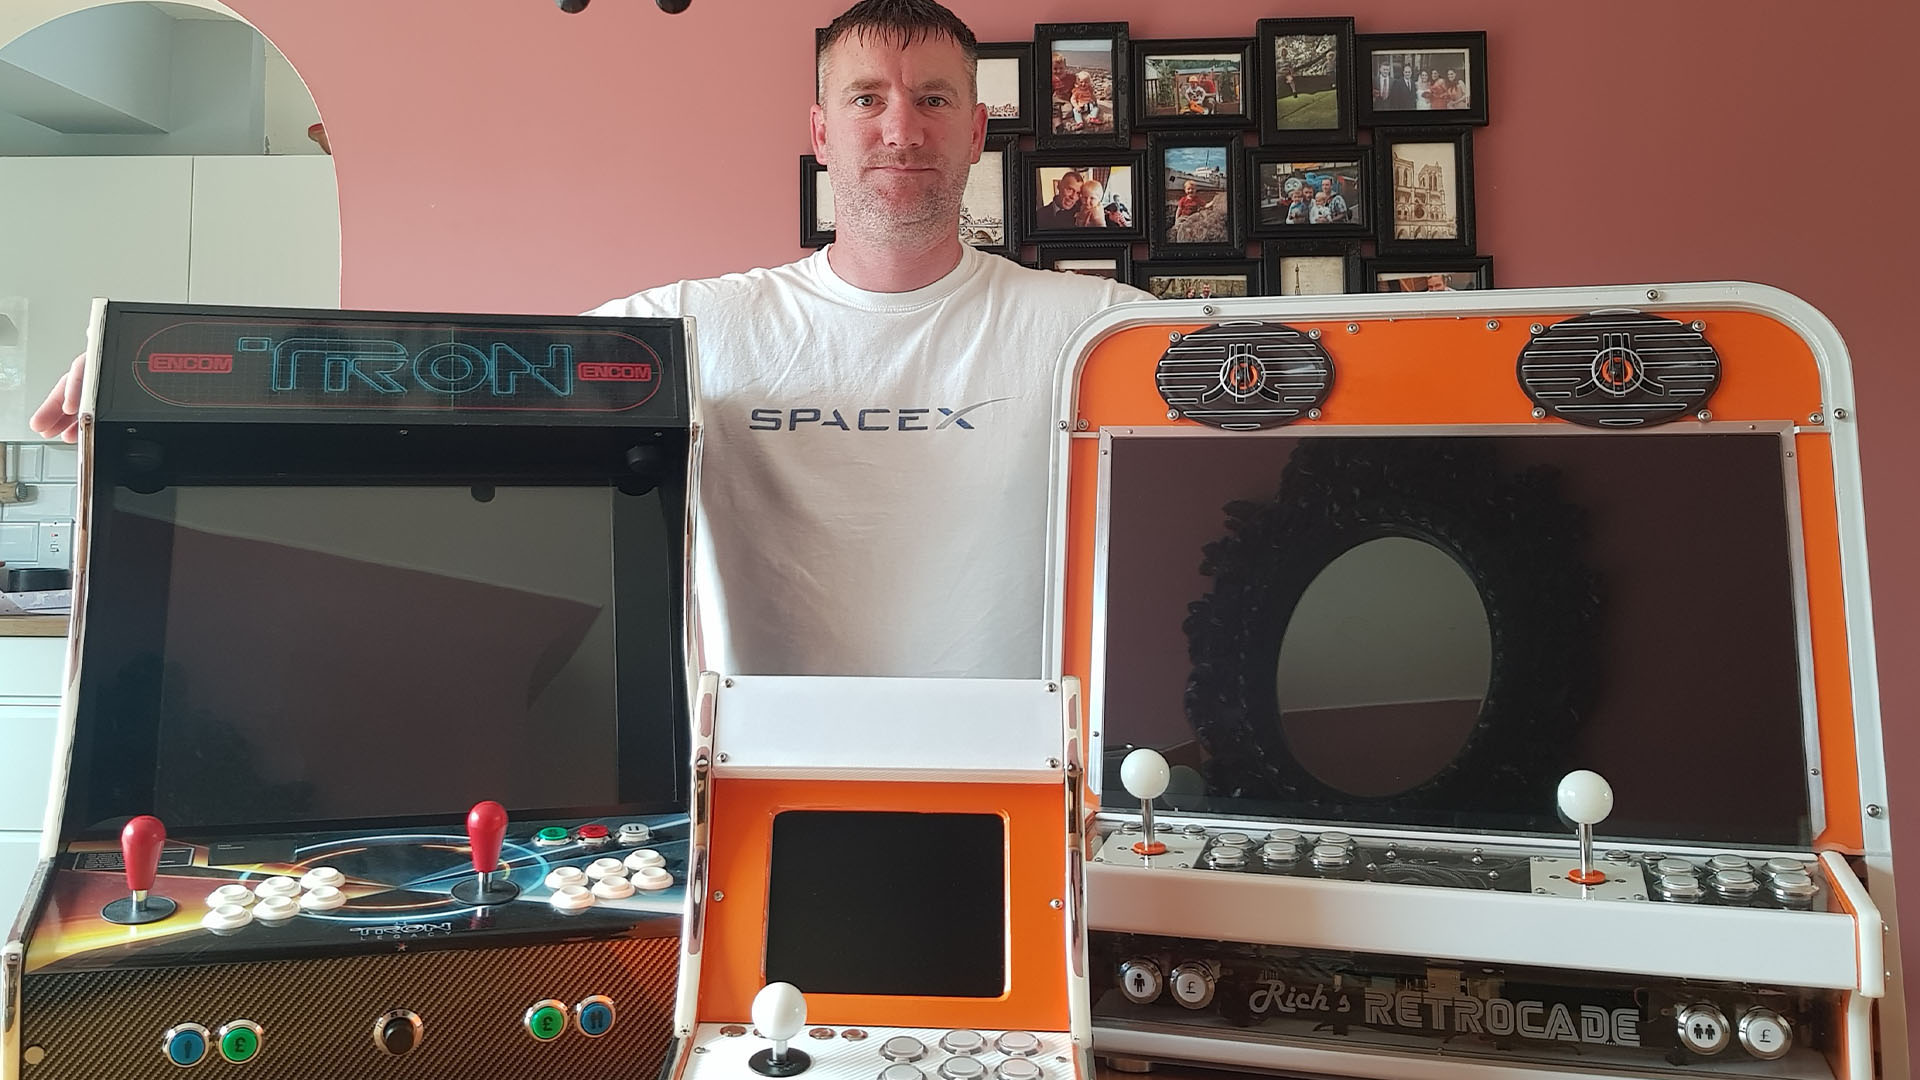 Retro arcade oyun özel bilgisayarı yapısı: Retrocade ve Tron arcade kabin tasarımlarıyla Rich Jones